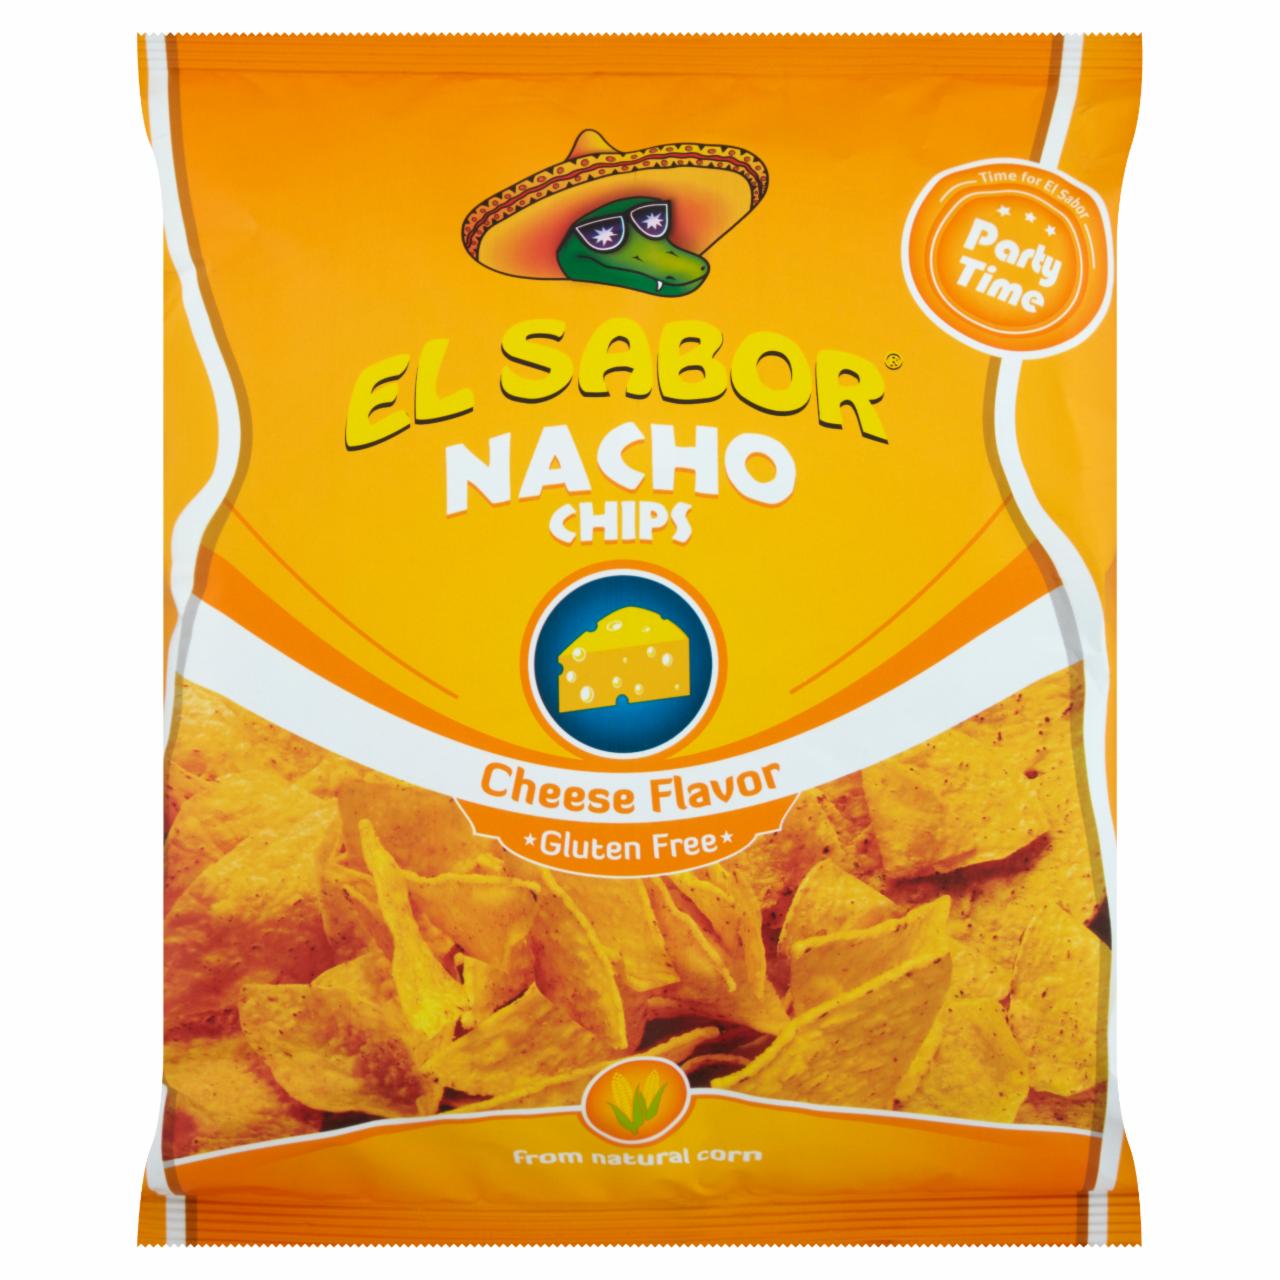 Képek - El Sabor nacho chips sajtos ízesítéssel 225 g